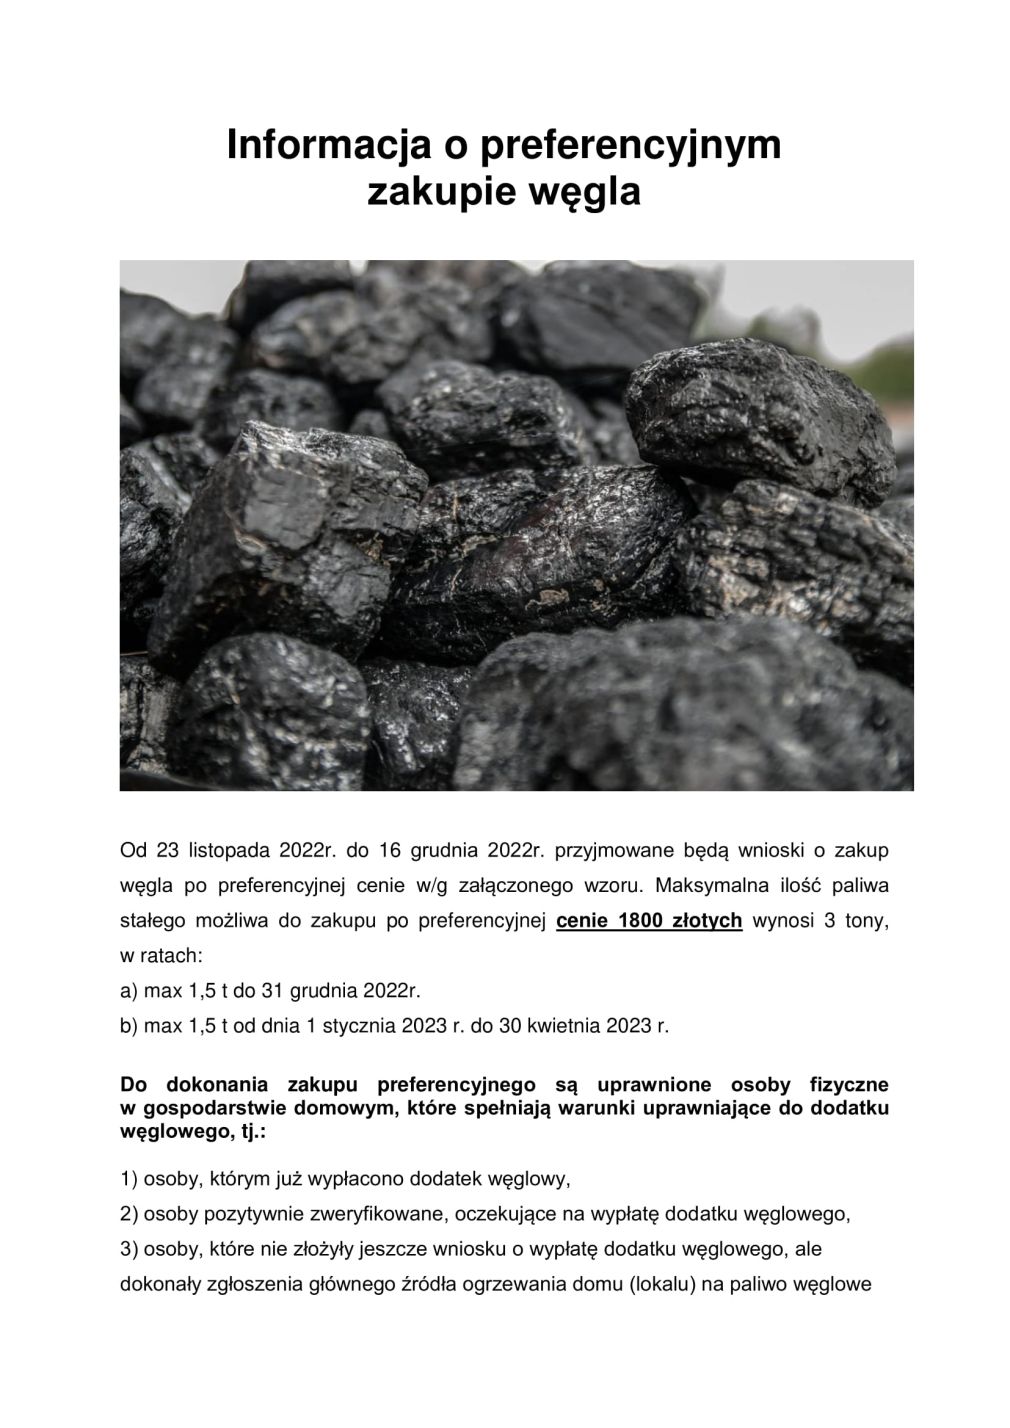 Uwaga! Informacja o zakupie węgla